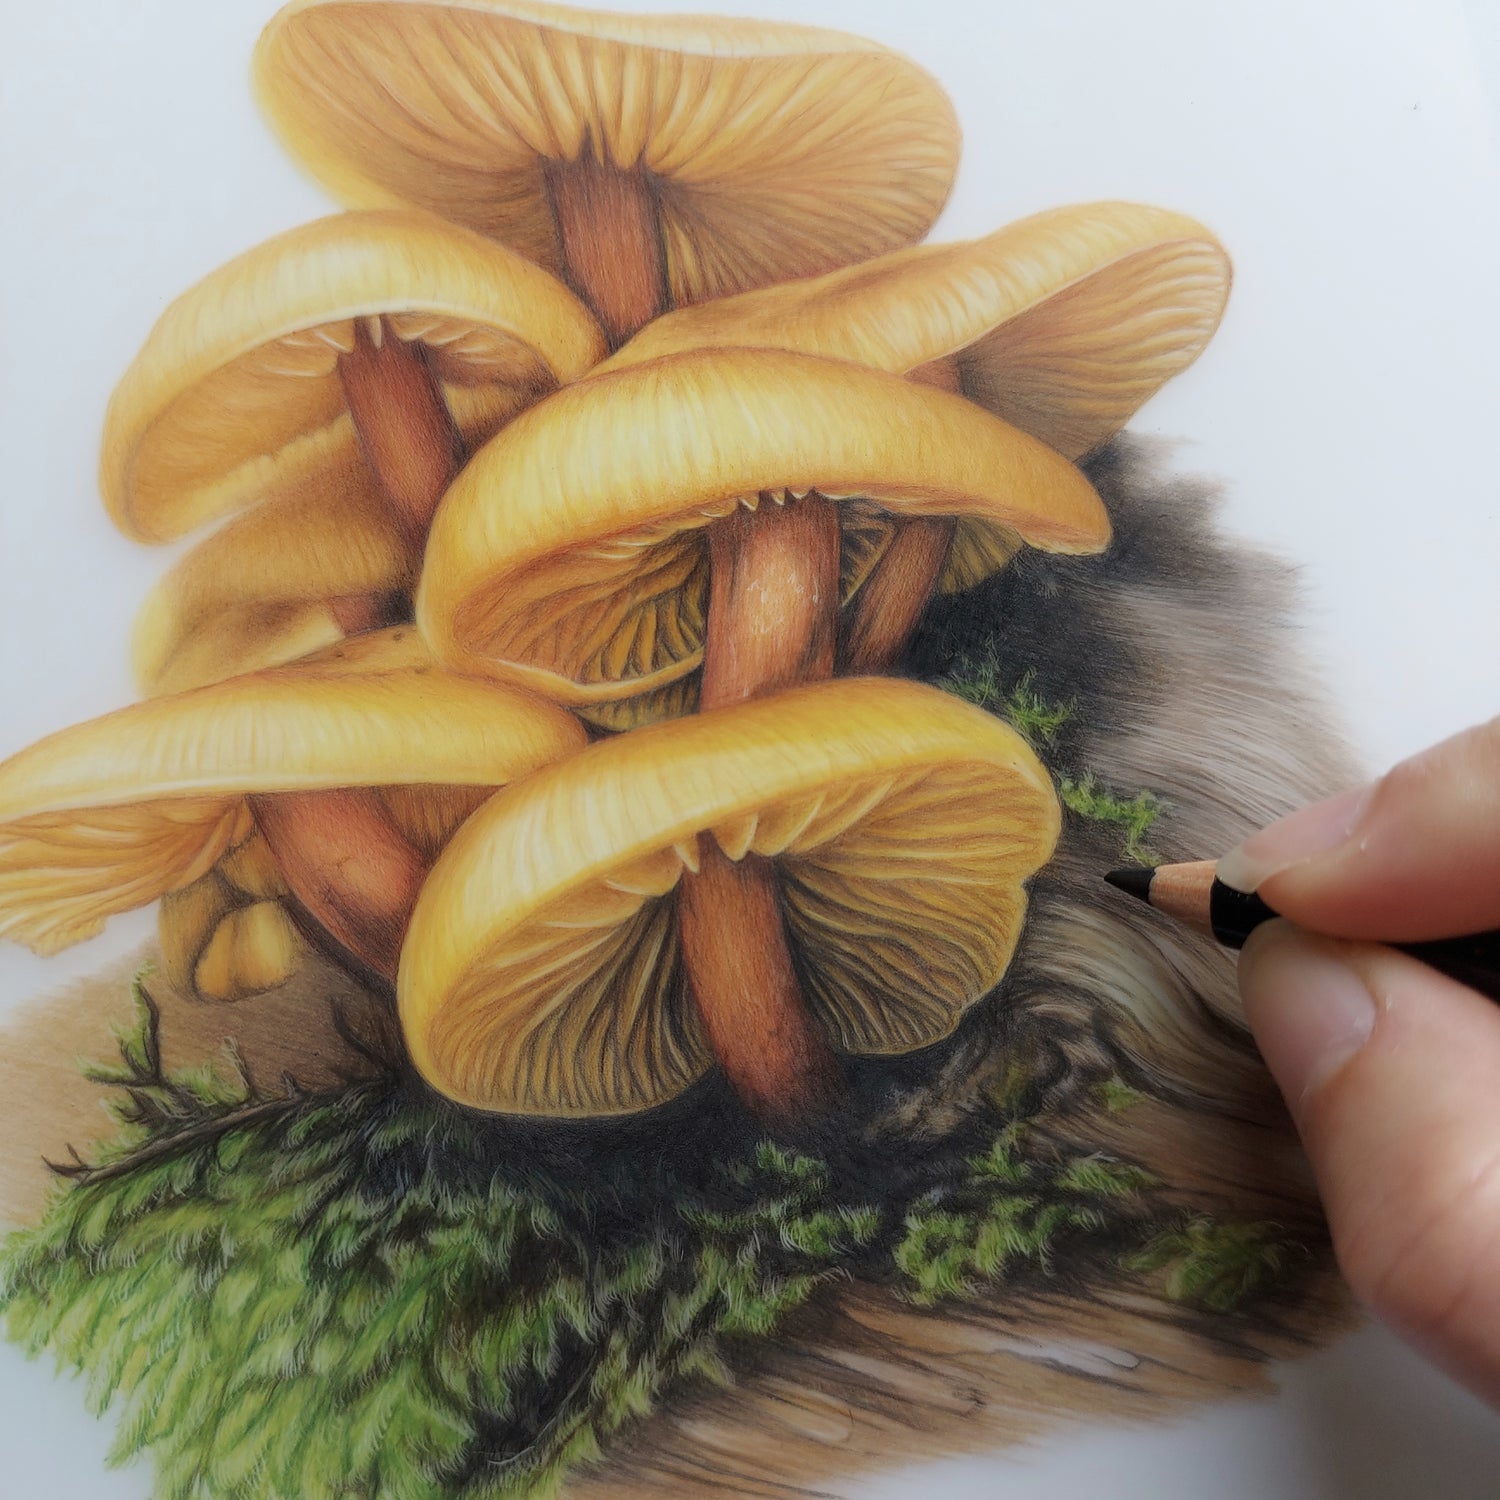 fungi pencil drawing new zealand art